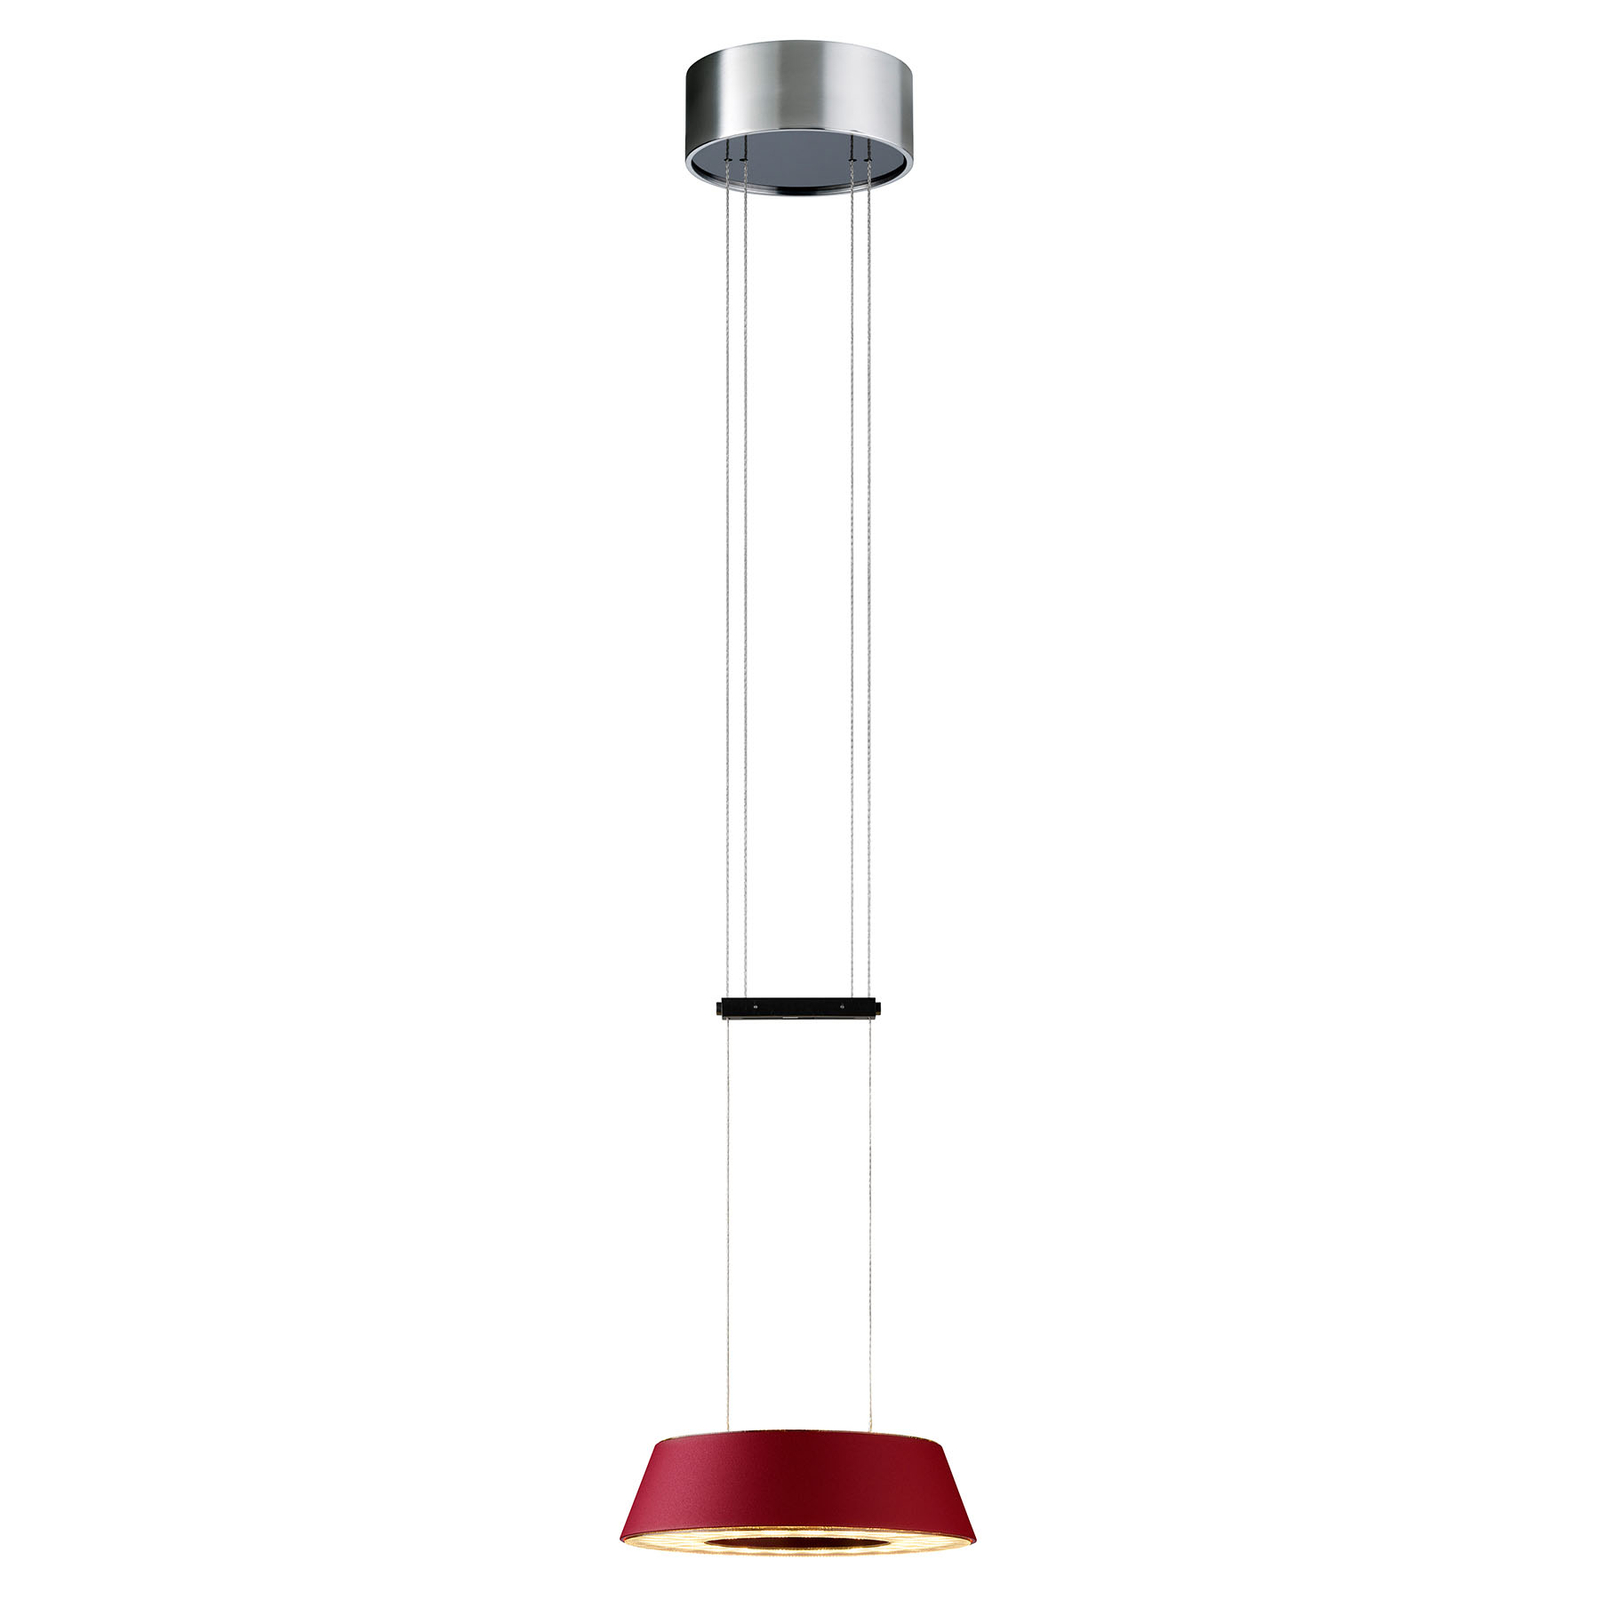 OLIGO Glance LED-riippuvalo, 1 lamp. punainen